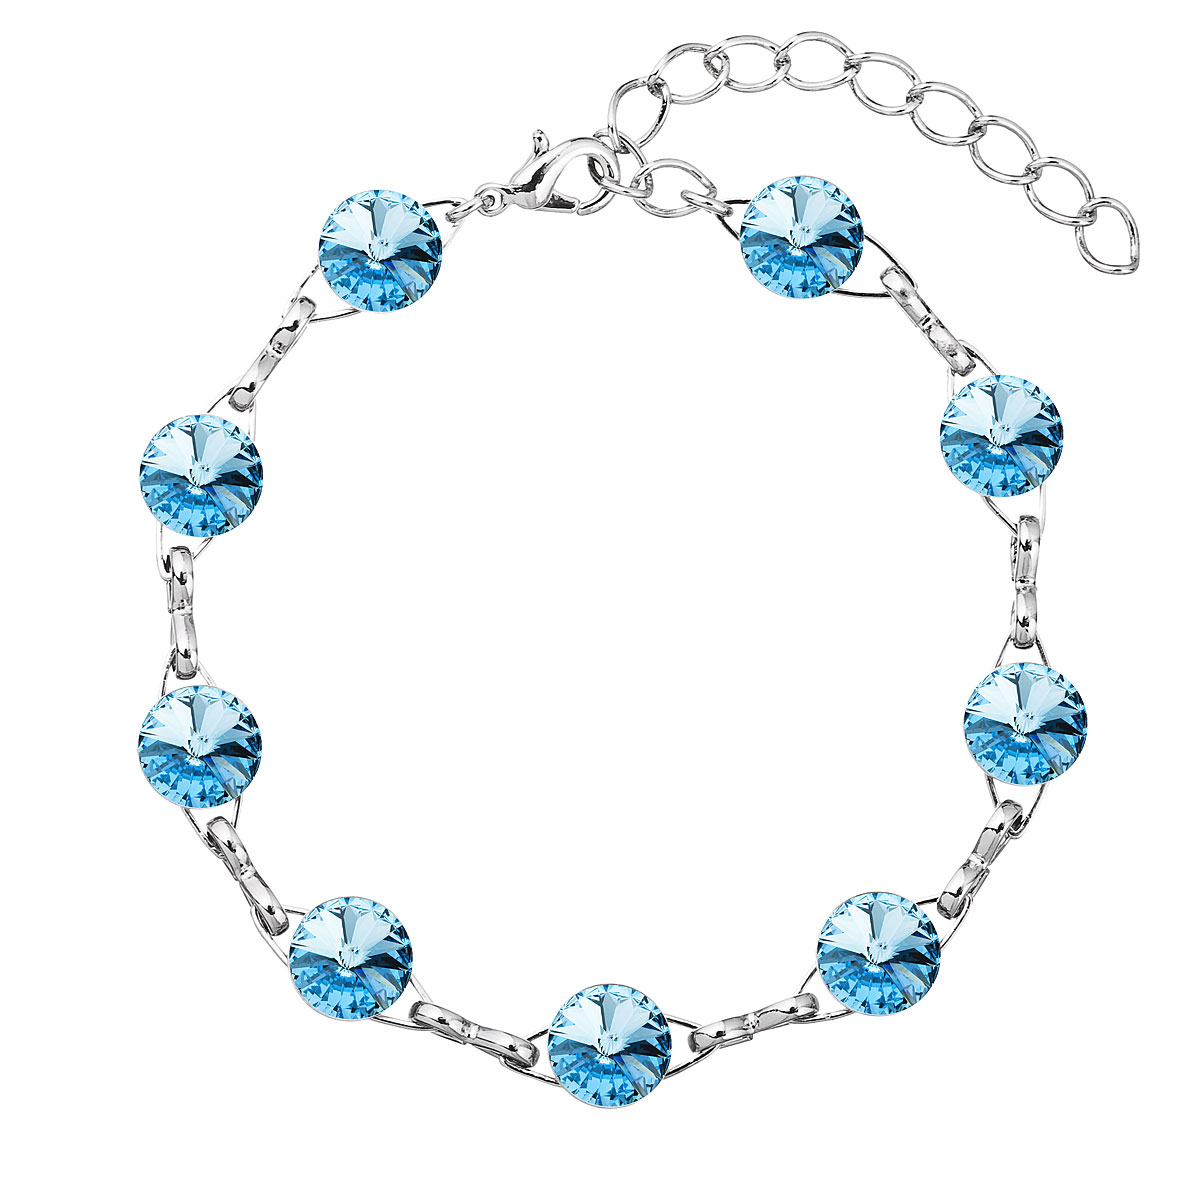 Evolution Group Náramek bižuterie se Swarovski krystaly modrý 53001.3 aqua